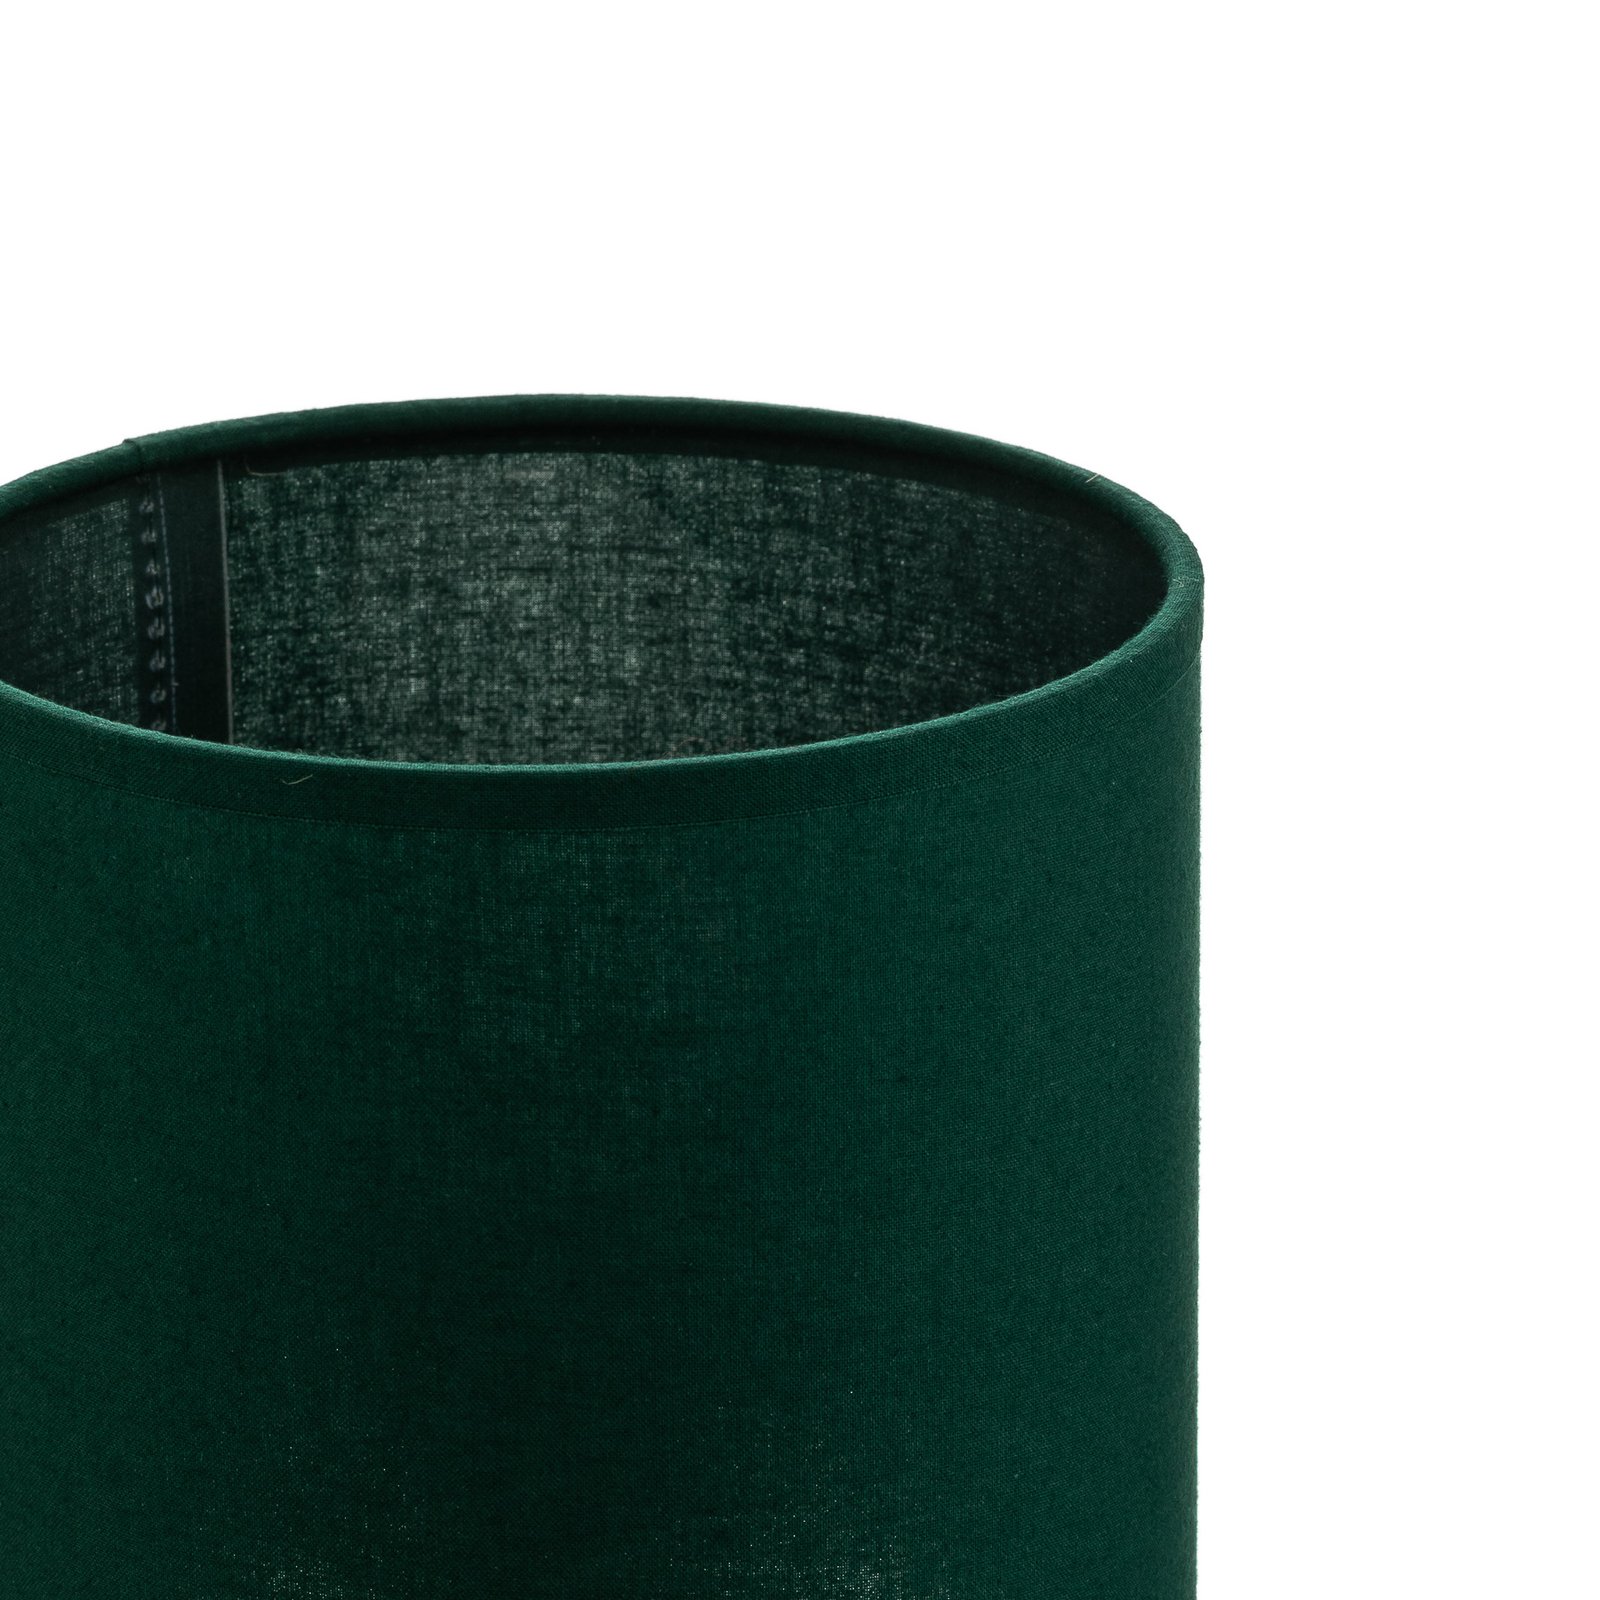 Lampenschirm Roller, grün, Ø 15 cm, Höhe 15 cm